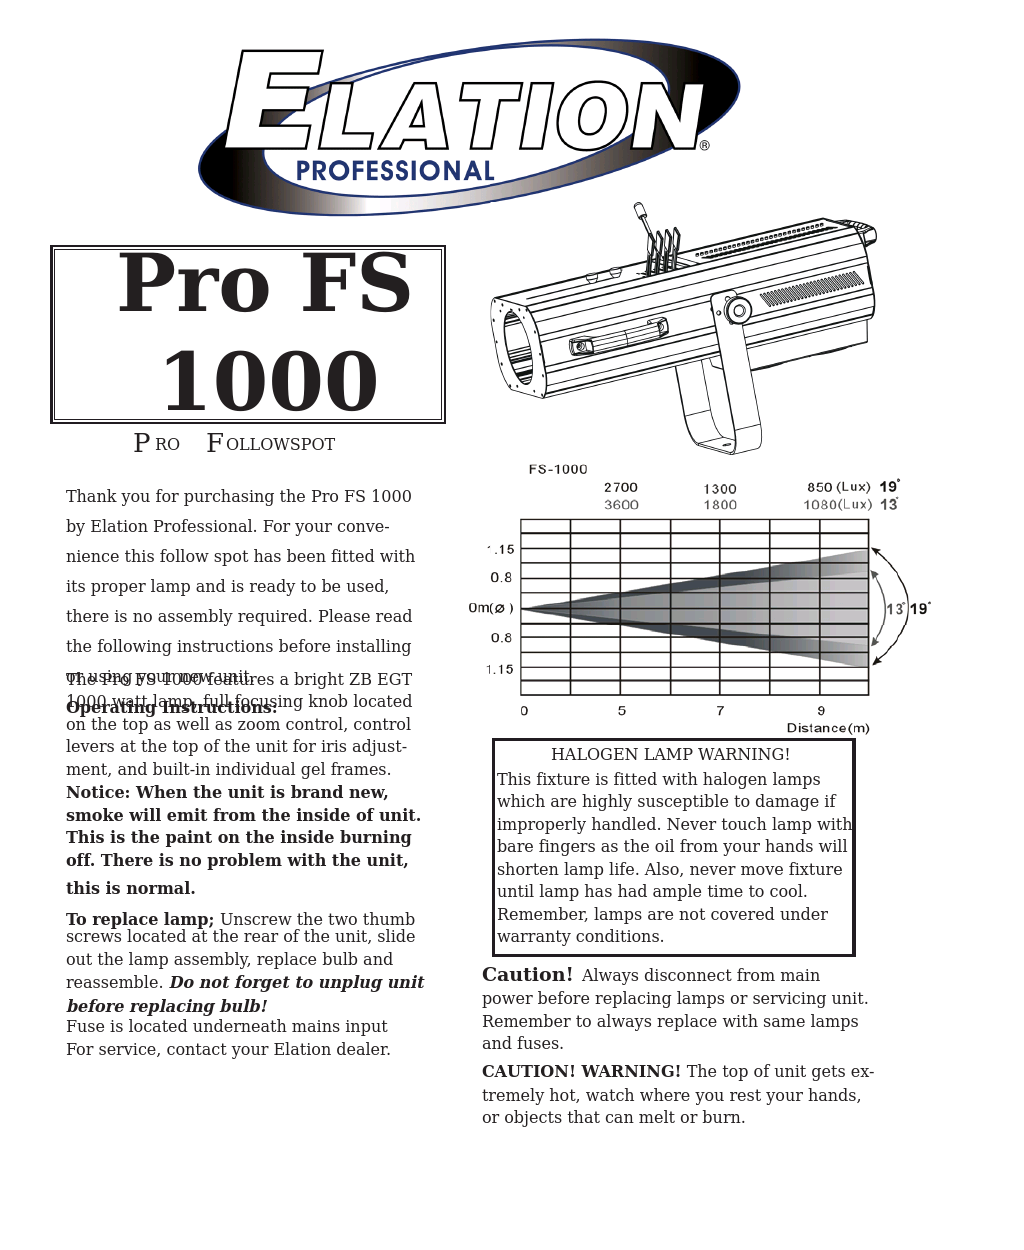 Pro FS 1000